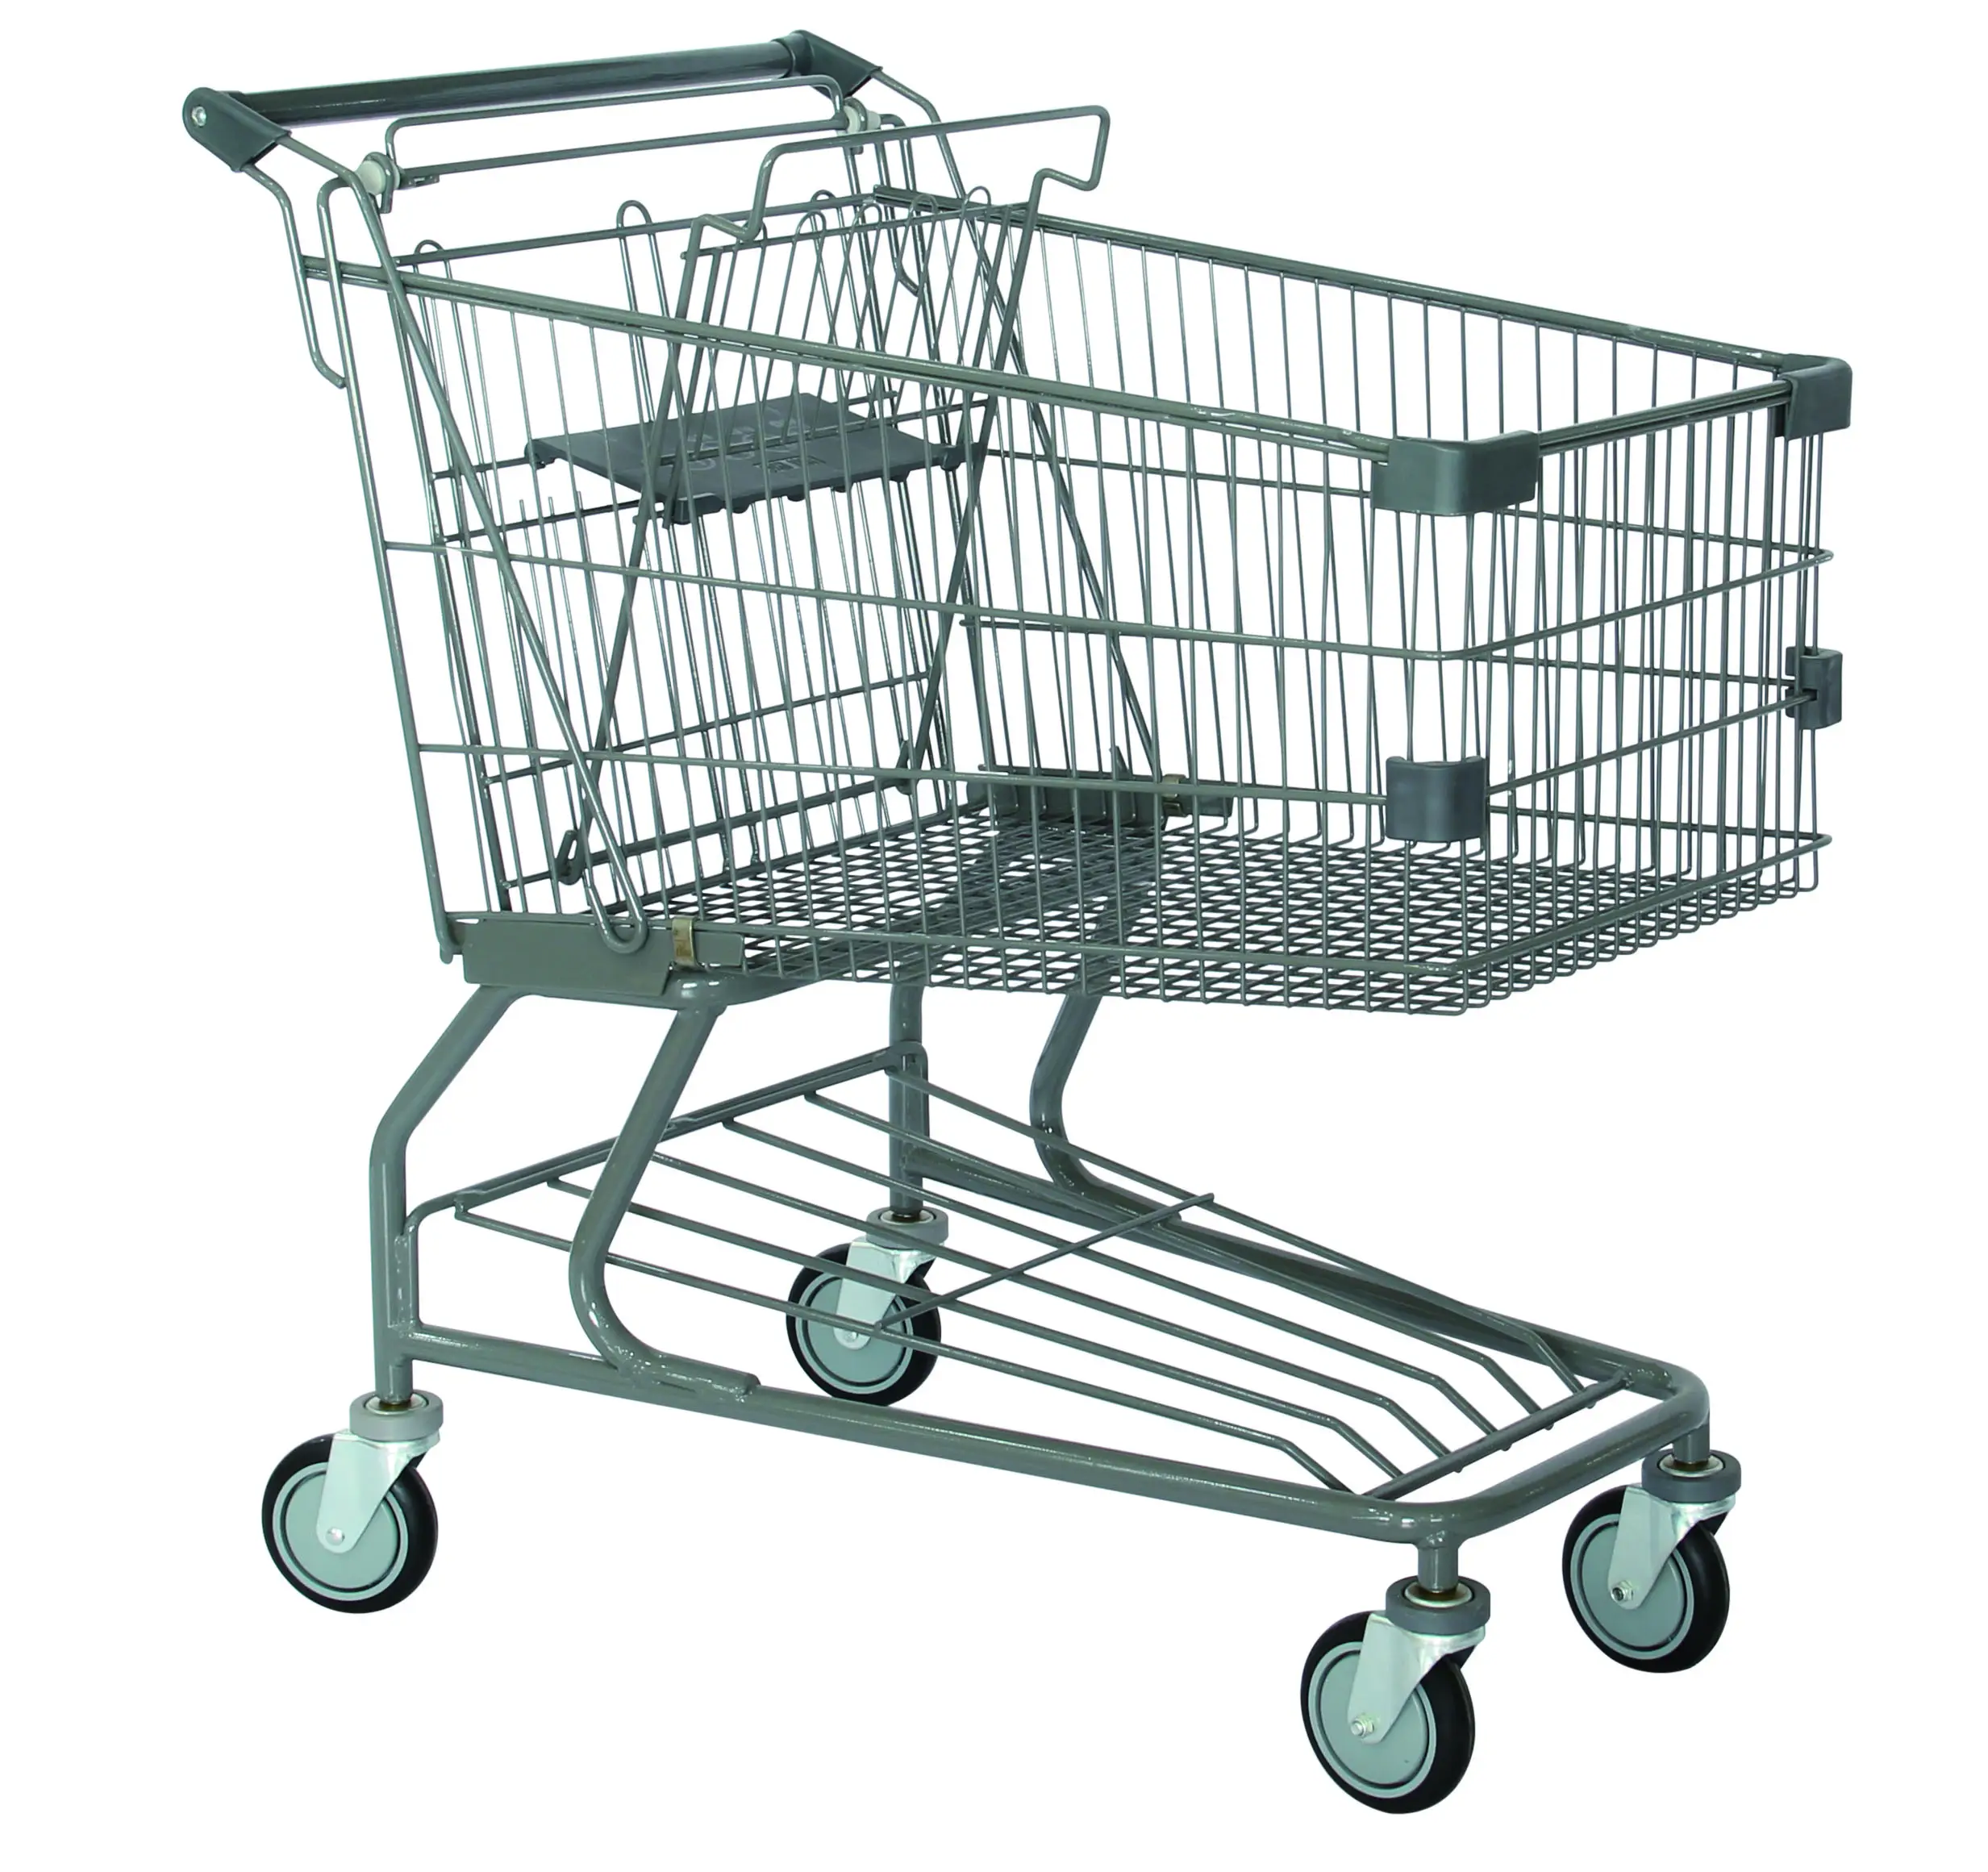 Chariot à main pour supermarché, équipement de supermarché en métal, chariot de supermarché, à bas prix, fabricant chinois, vente en gros